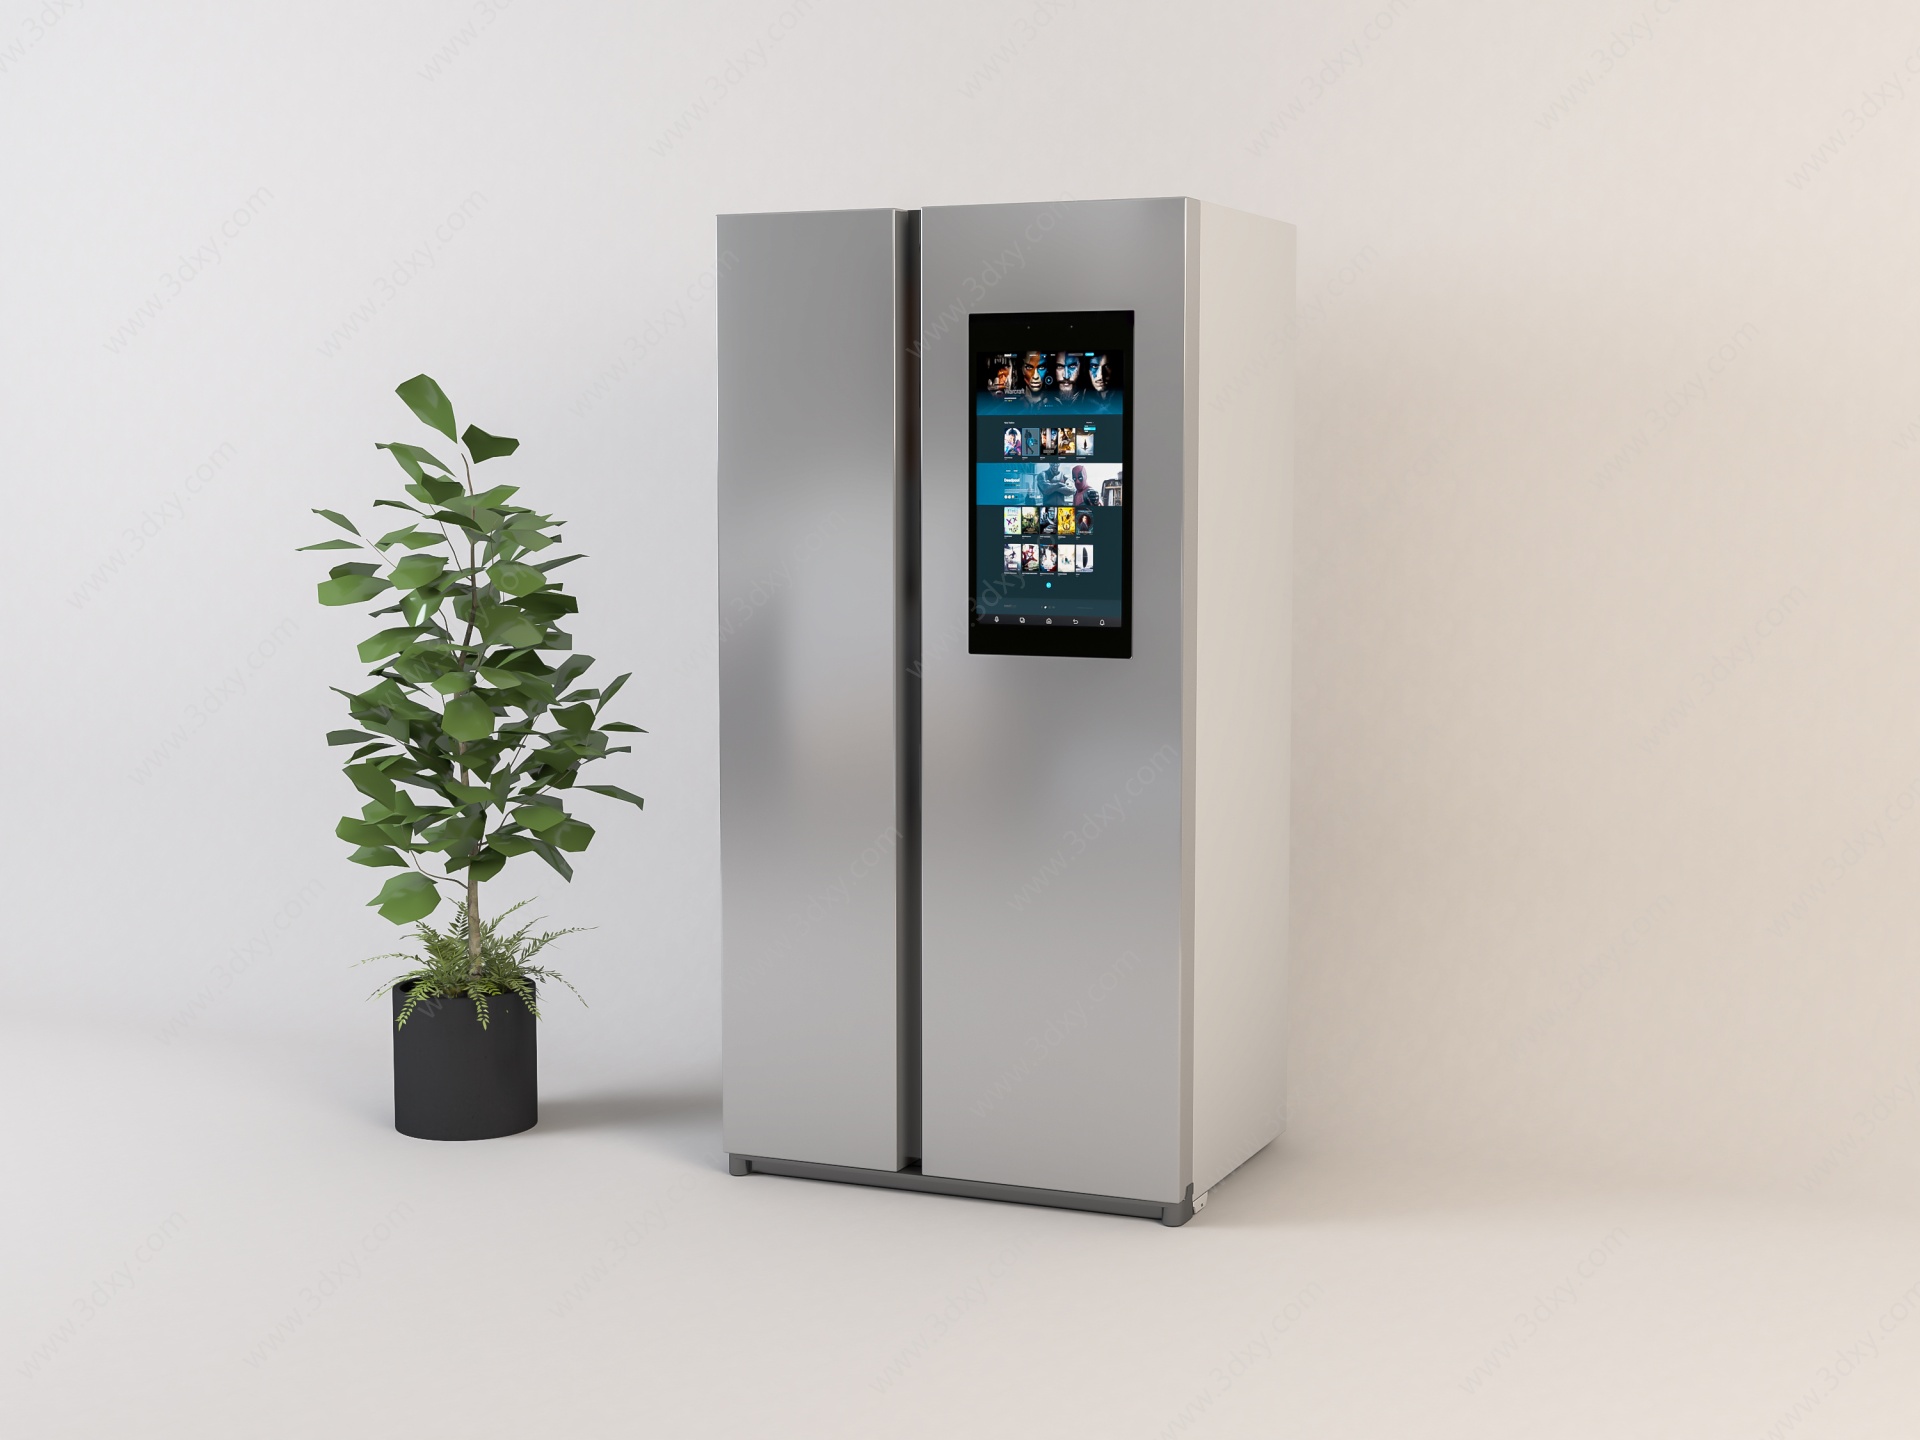 家用电器智能对开门电冰箱3D模型